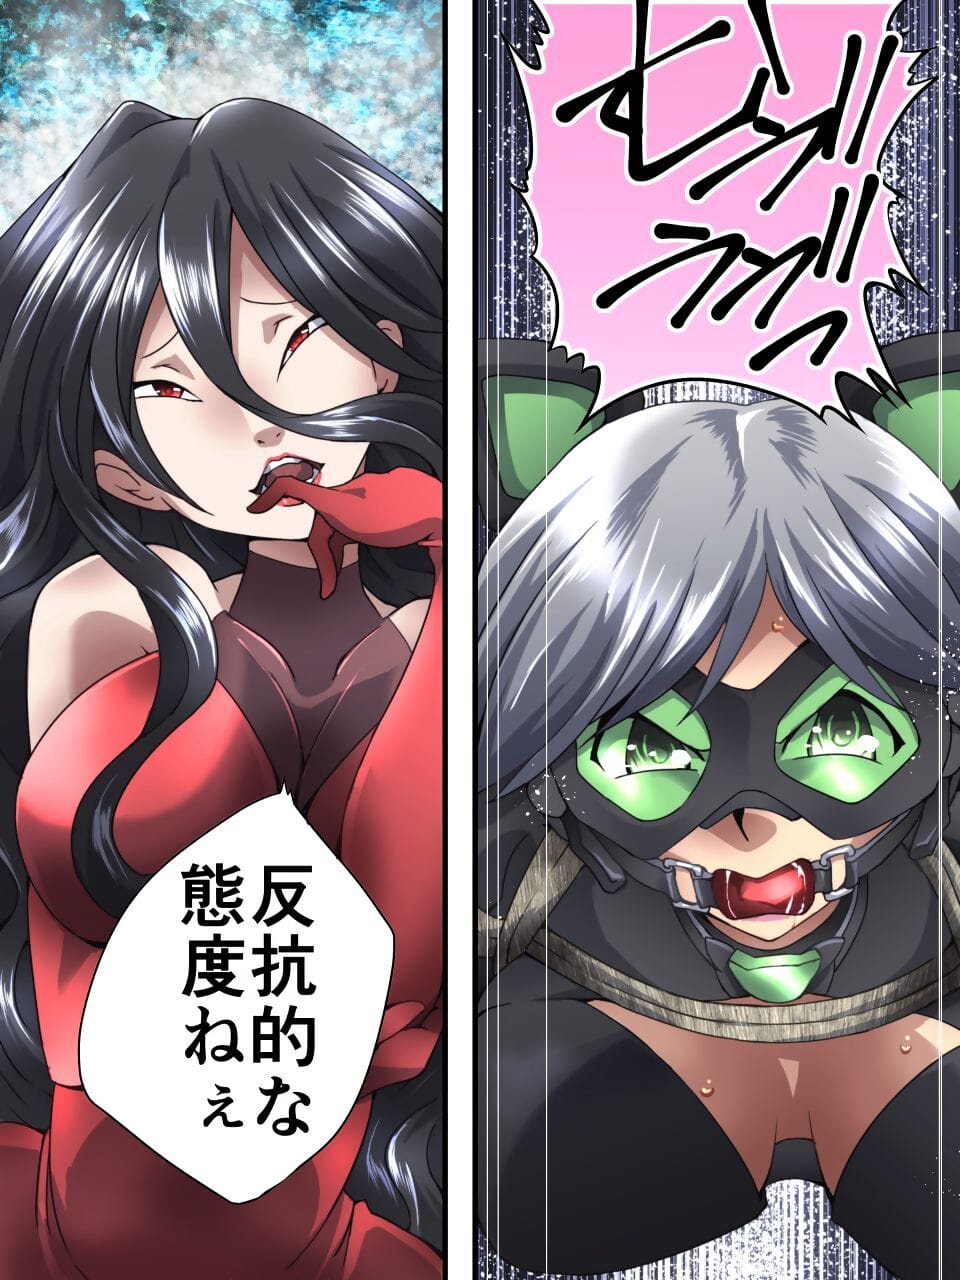 kaitou argent chat manga interdiction Dai wa page 1